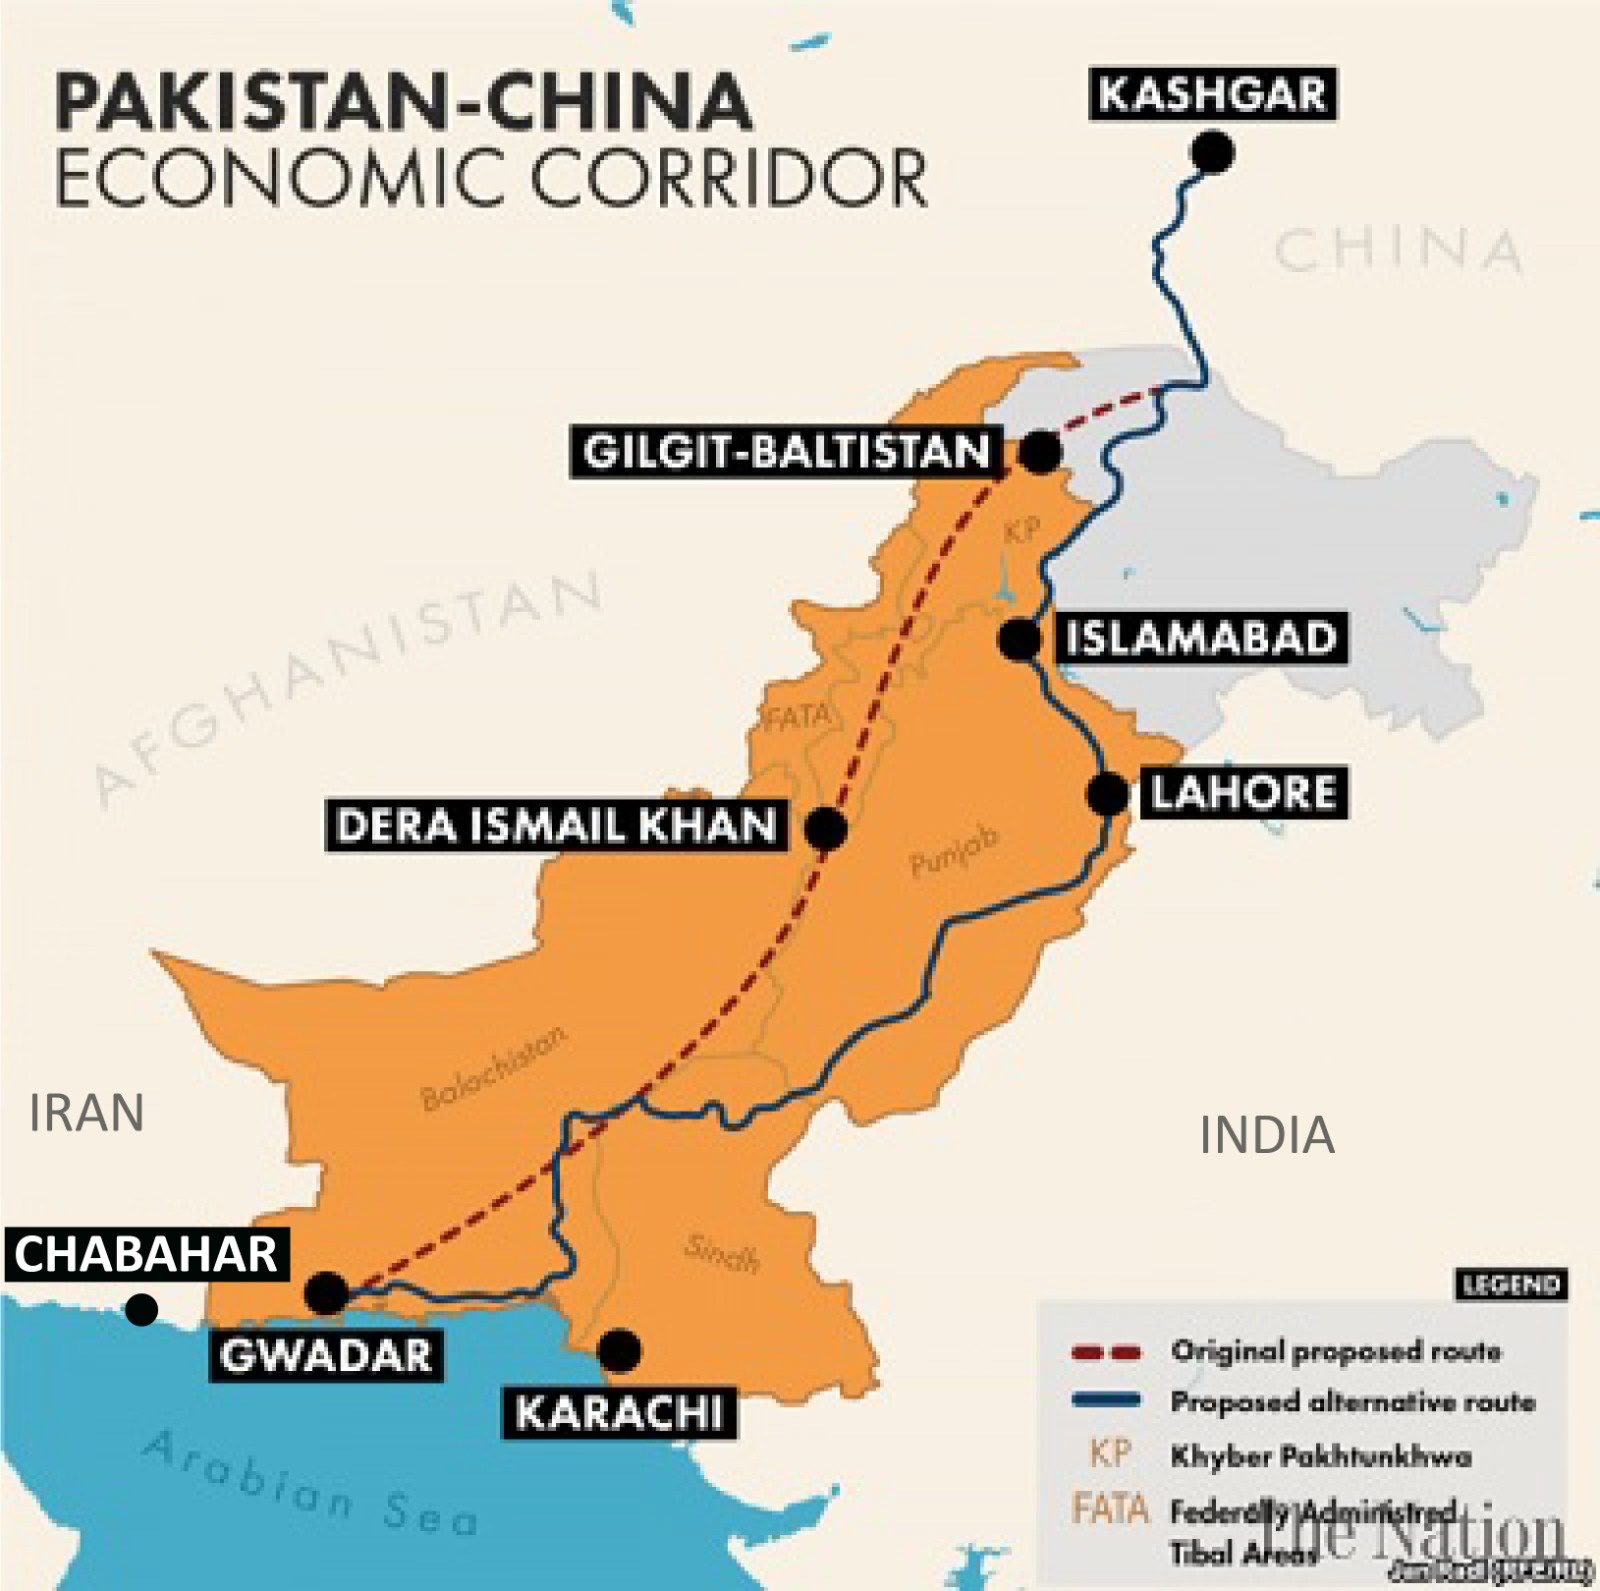 عقب نشینی تدریجی چین از اجرای پروژه بندر گوادر به دلیل مشکلات امنیتی، تورم و بدهی های پاکستان